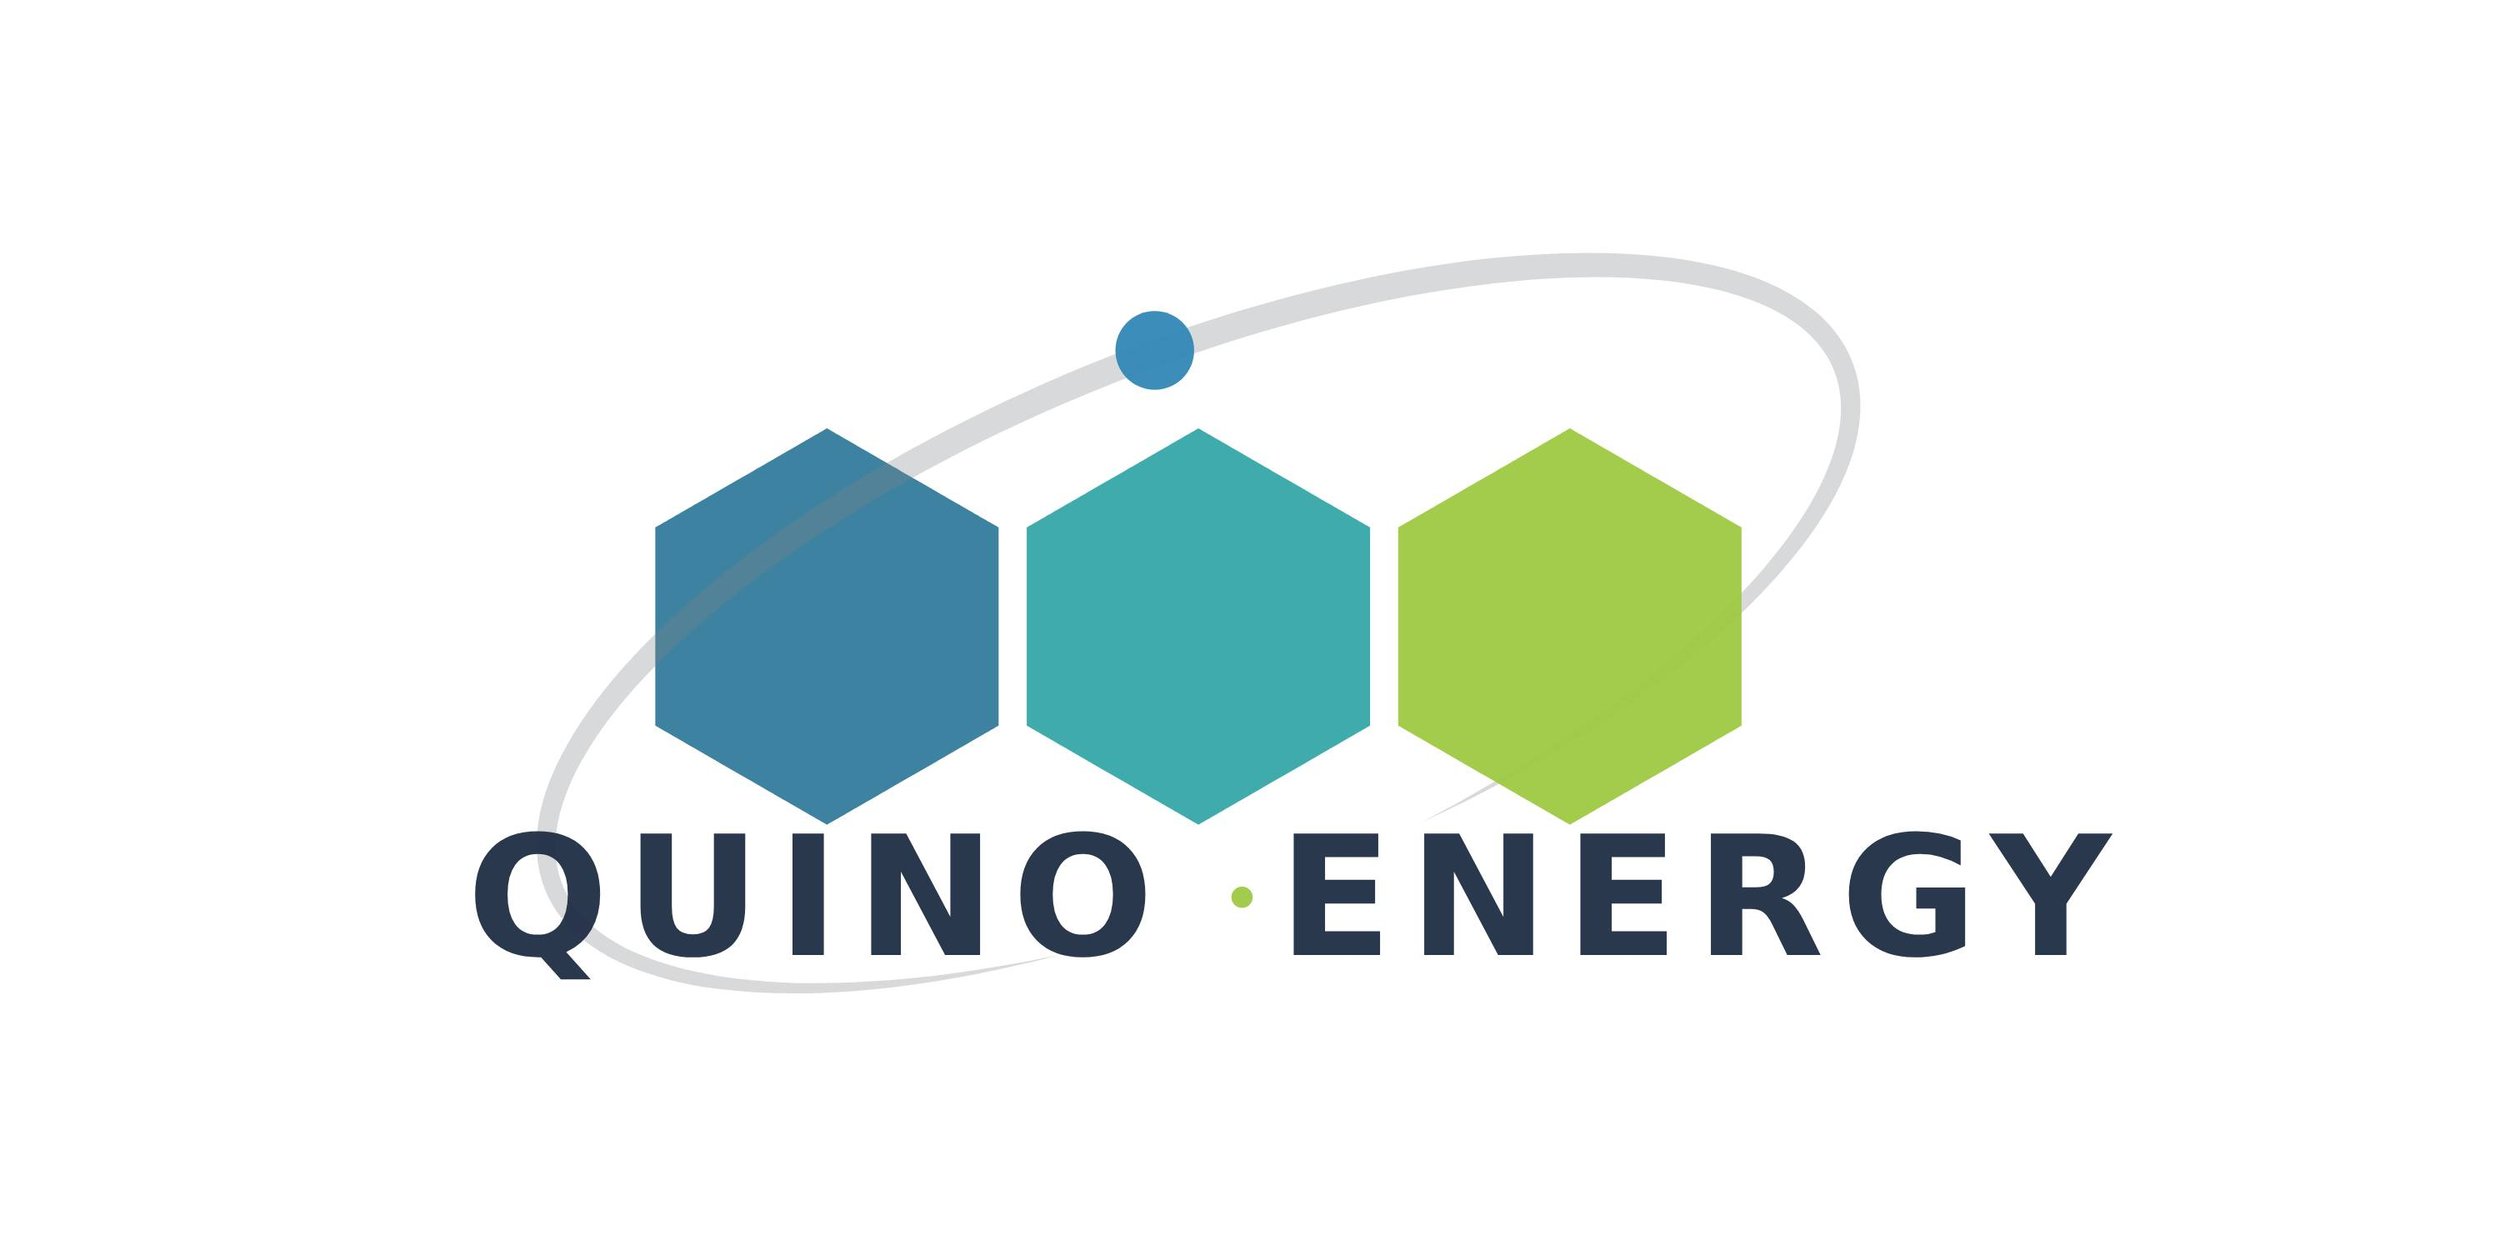 Quino Energy